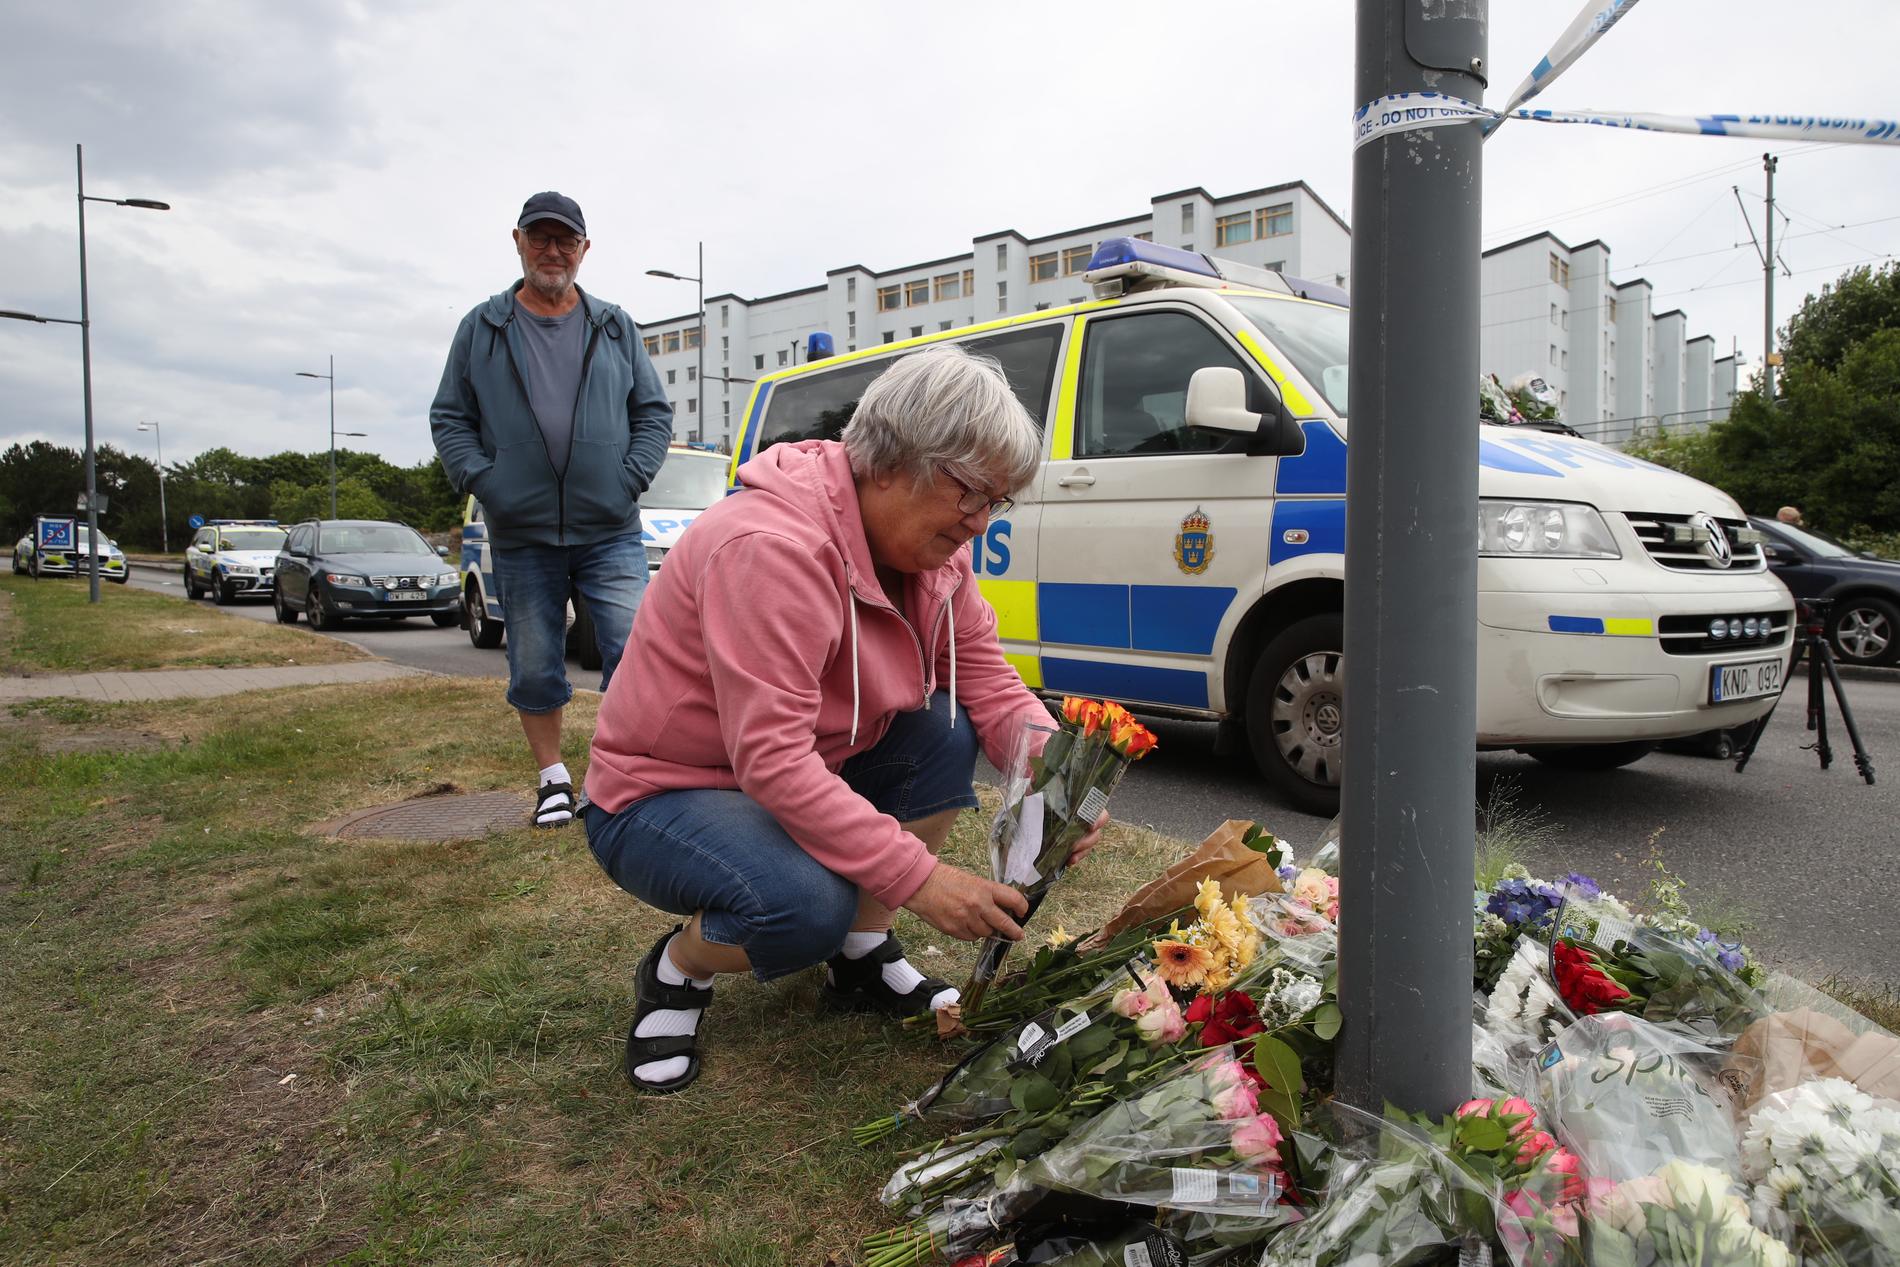 Boende i området lägger blommor på platsen där polismannen sköts.